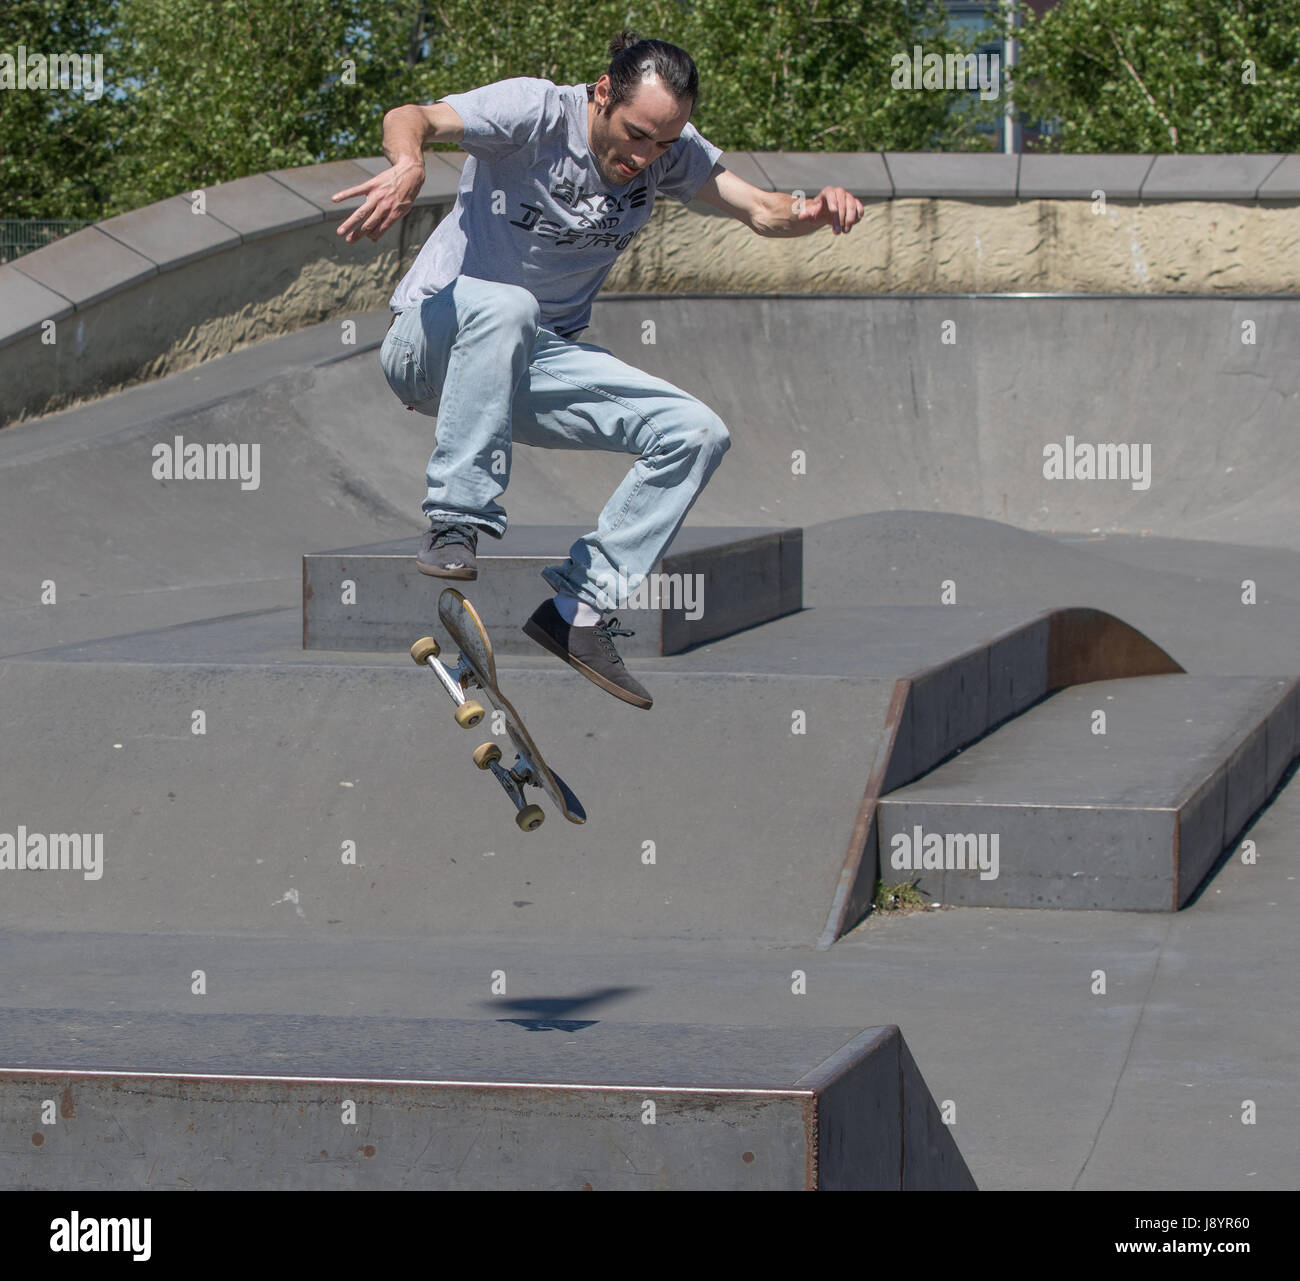 Un guidatore di skateboard eseguendo un kickflip in aria Foto Stock